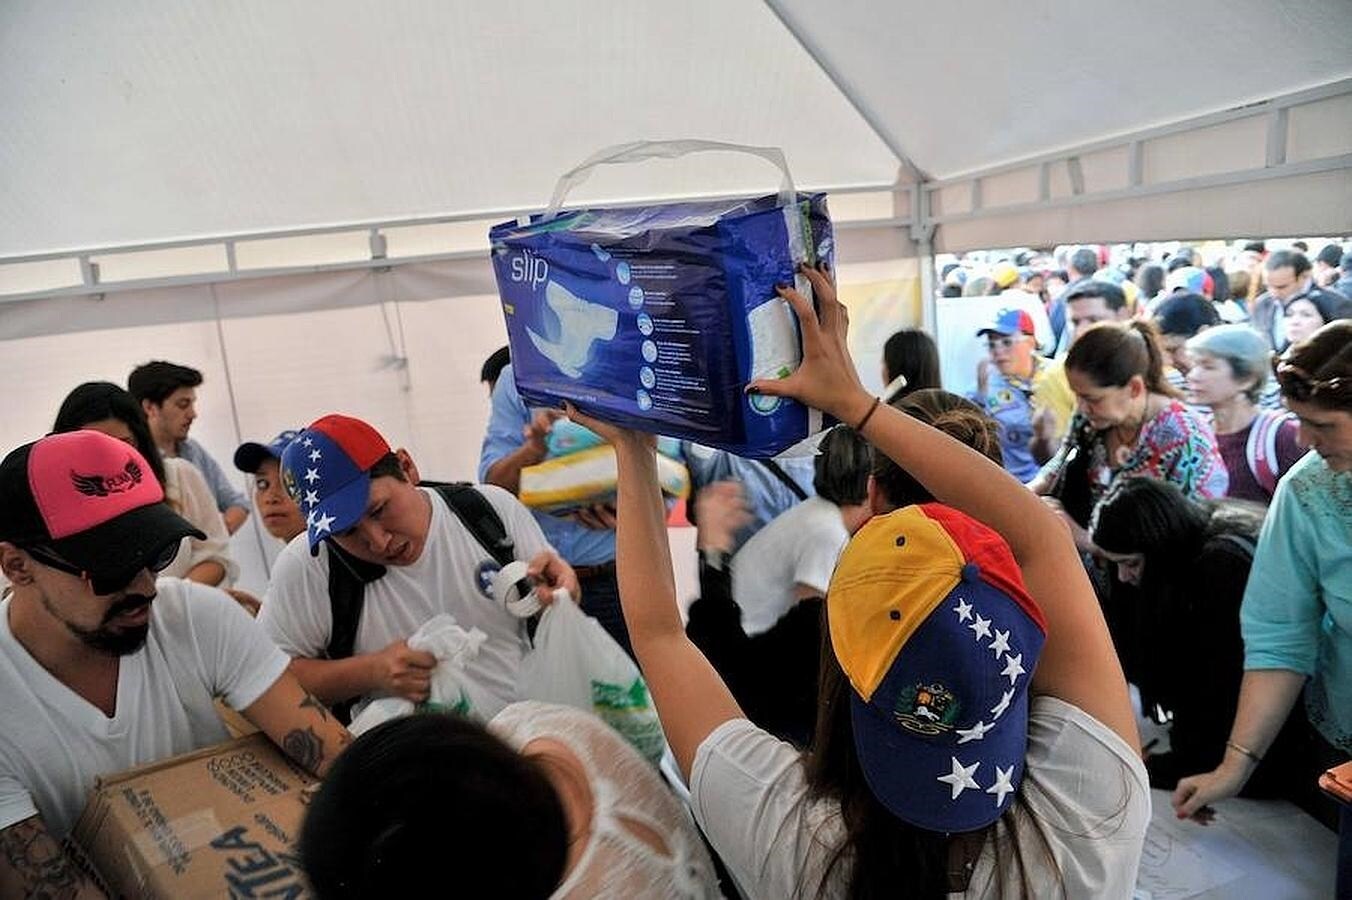 Una mujer sostiene una bolsa de pañales, mientras otros ciudadanos hacen cola para entregar sus donativos para el pueblo venezolano en una colecta liderada por Lilian Tintori en Bogotá. 